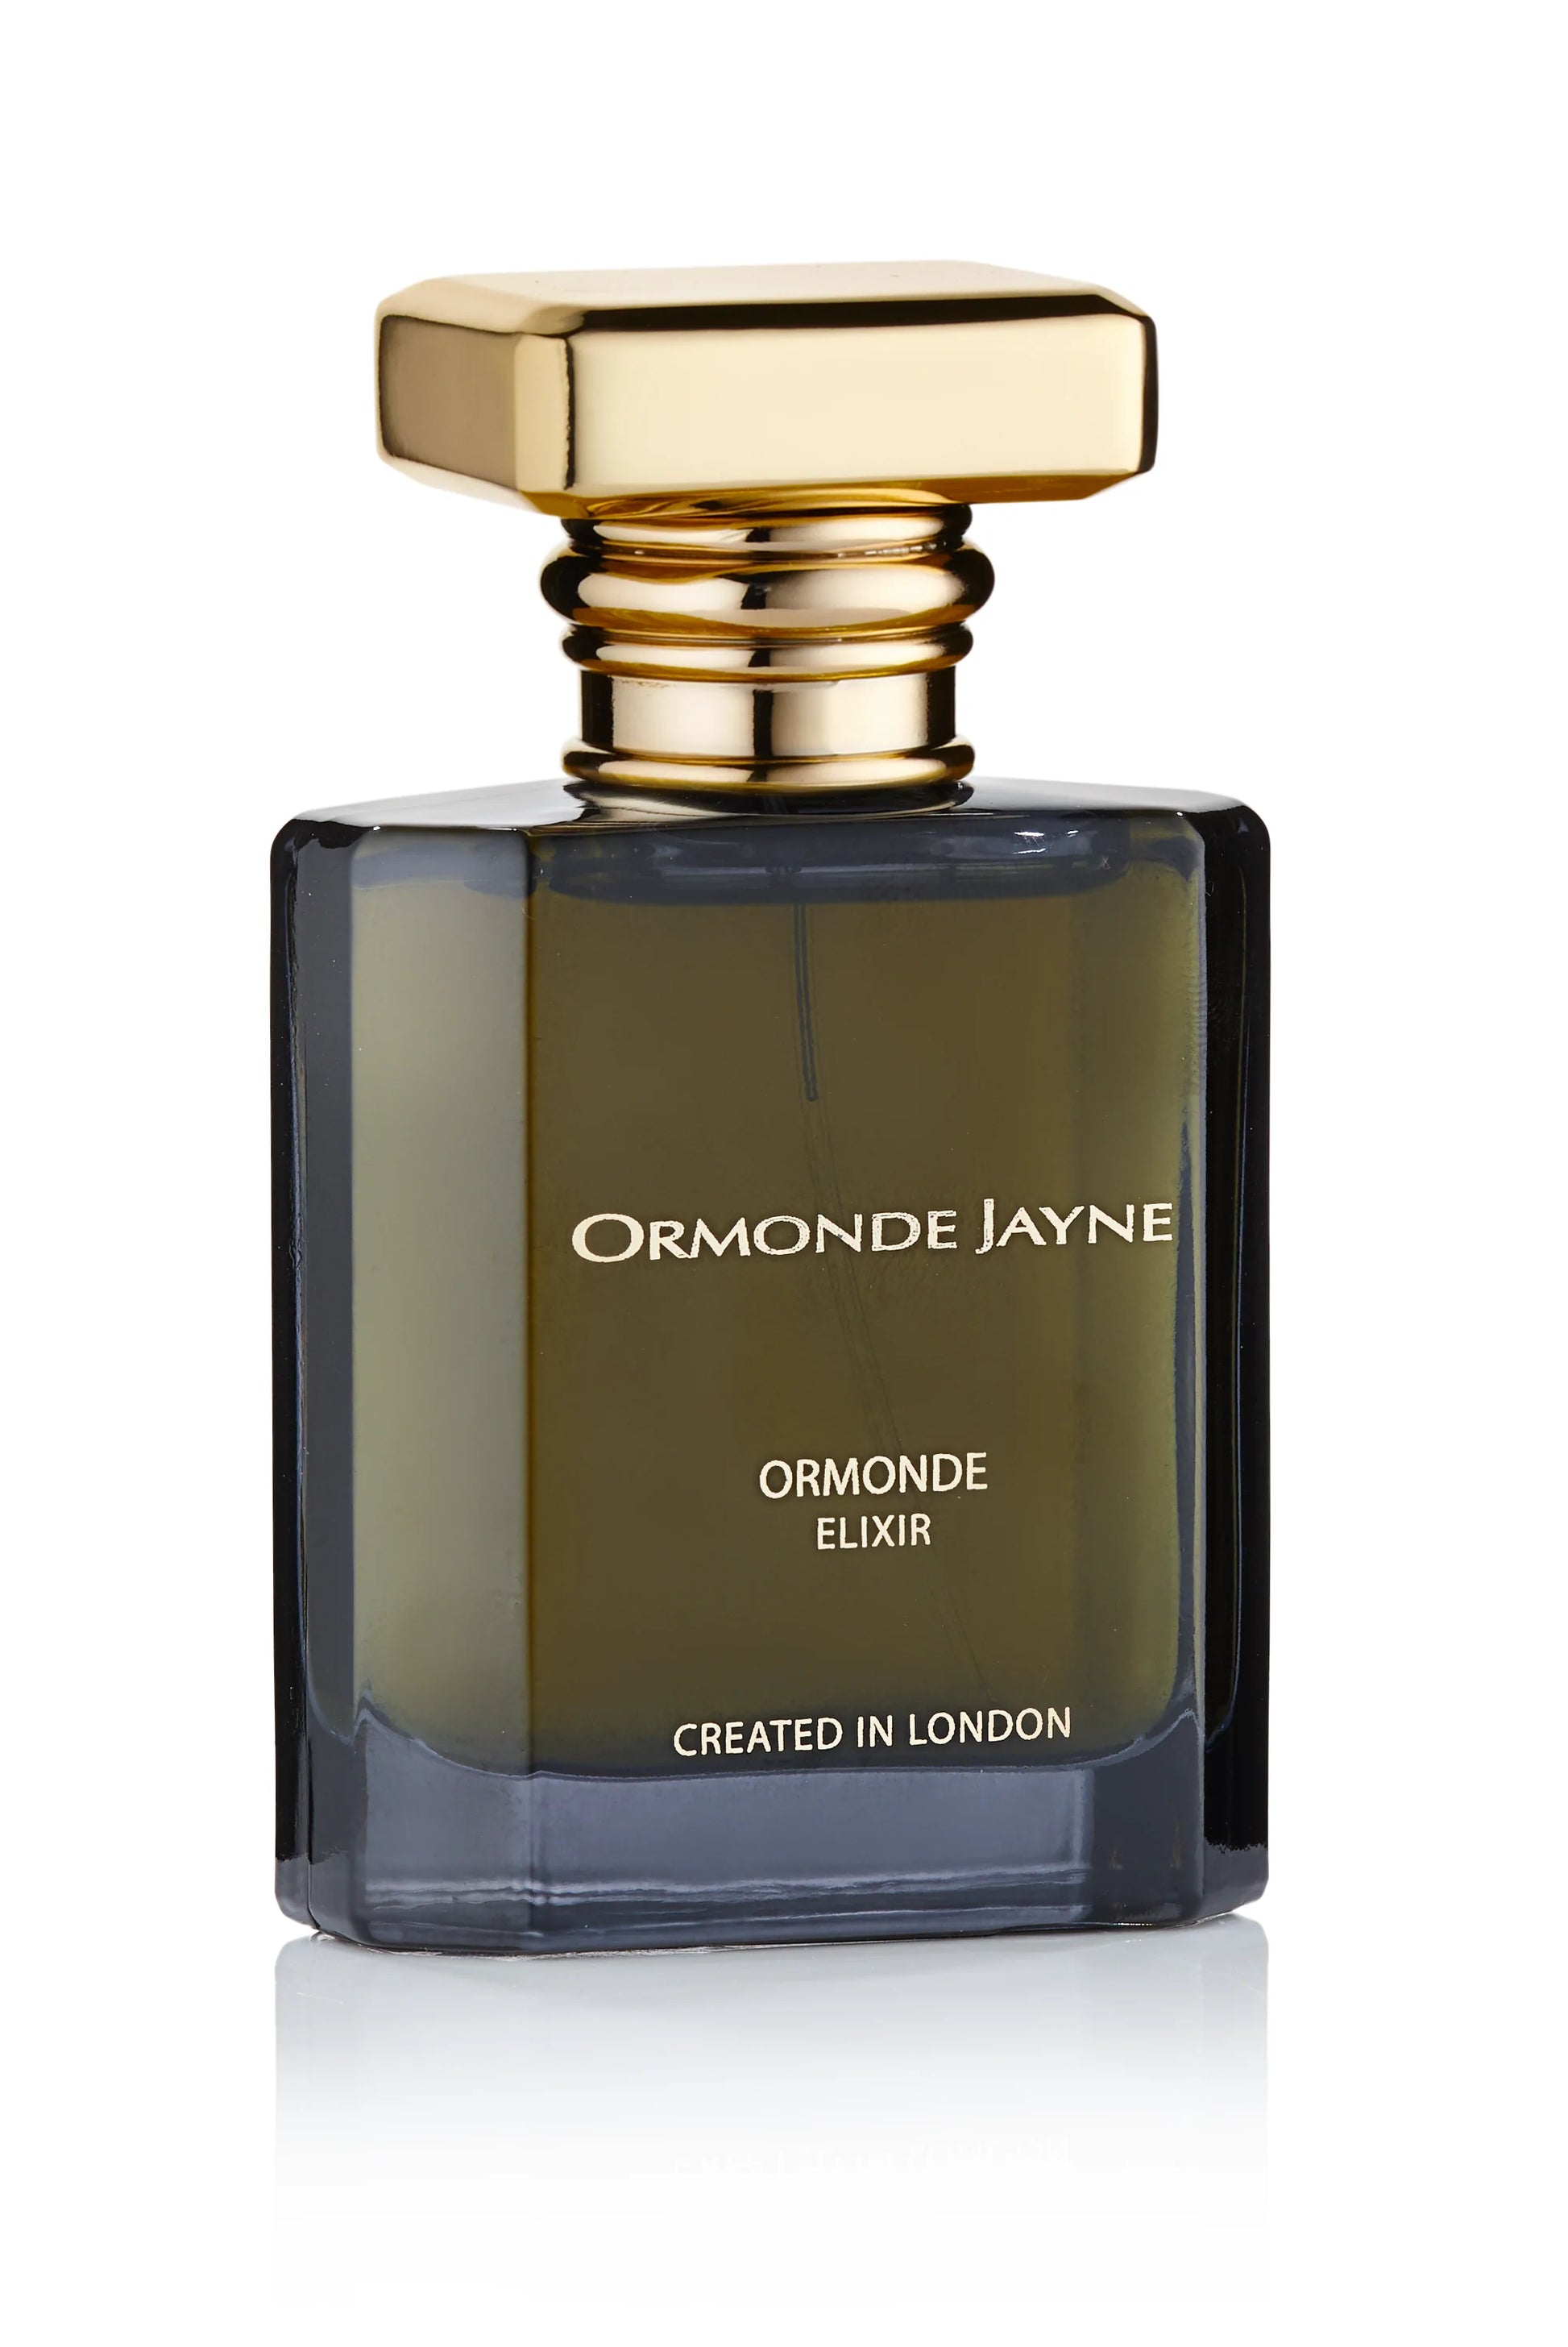 Ormonde Jayne Ormonde Elixir 2ml 0.06 fl. o.z. official fragrance sample